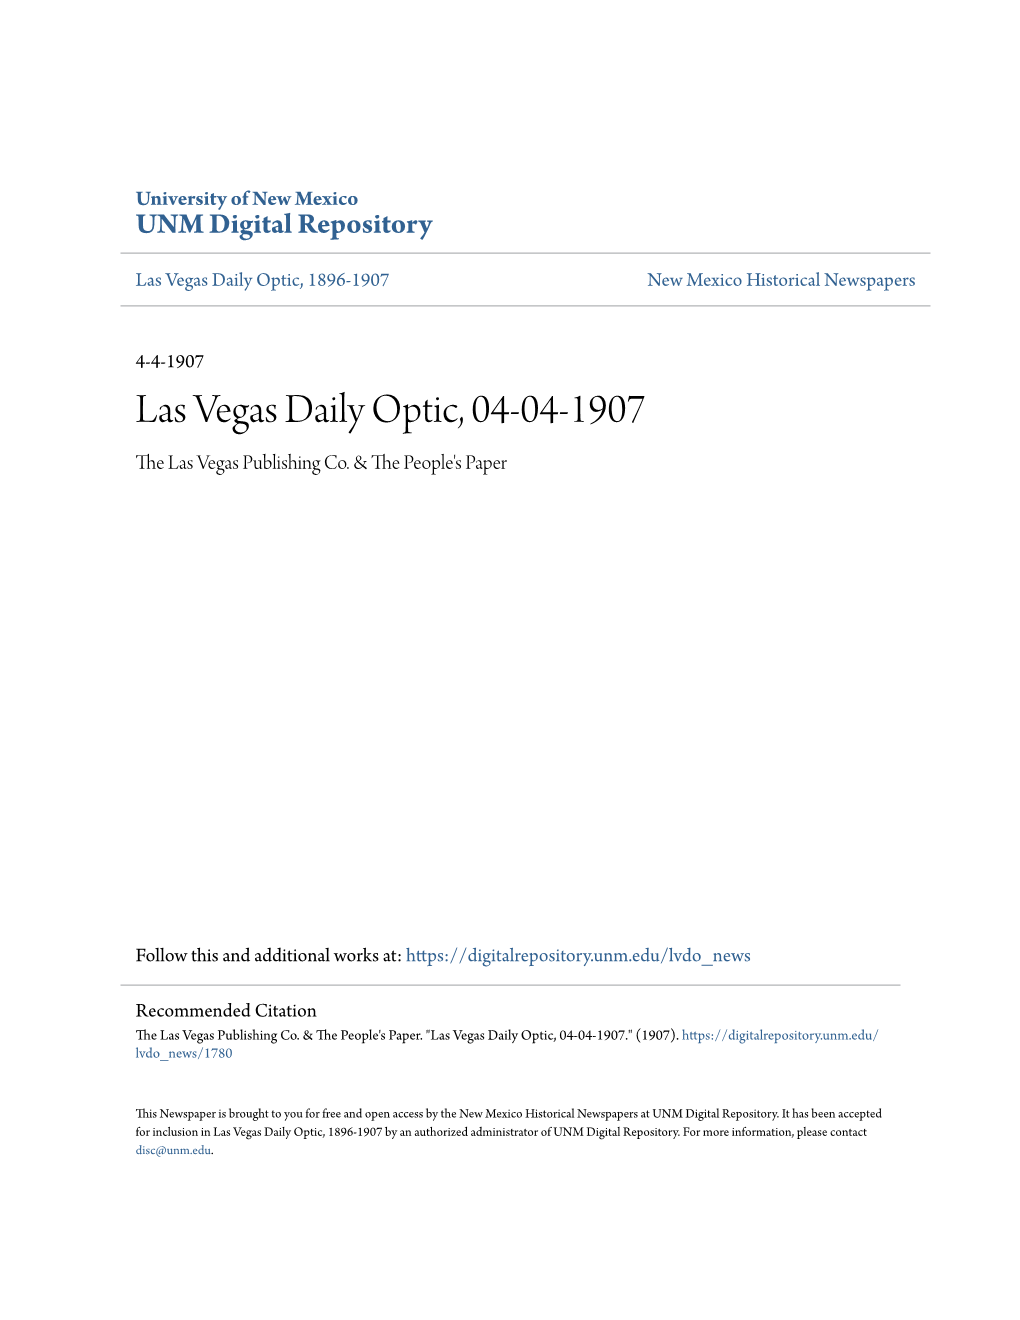 Las Vegas Daily Optic, 04-04-1907 the Las Vegas Publishing Co